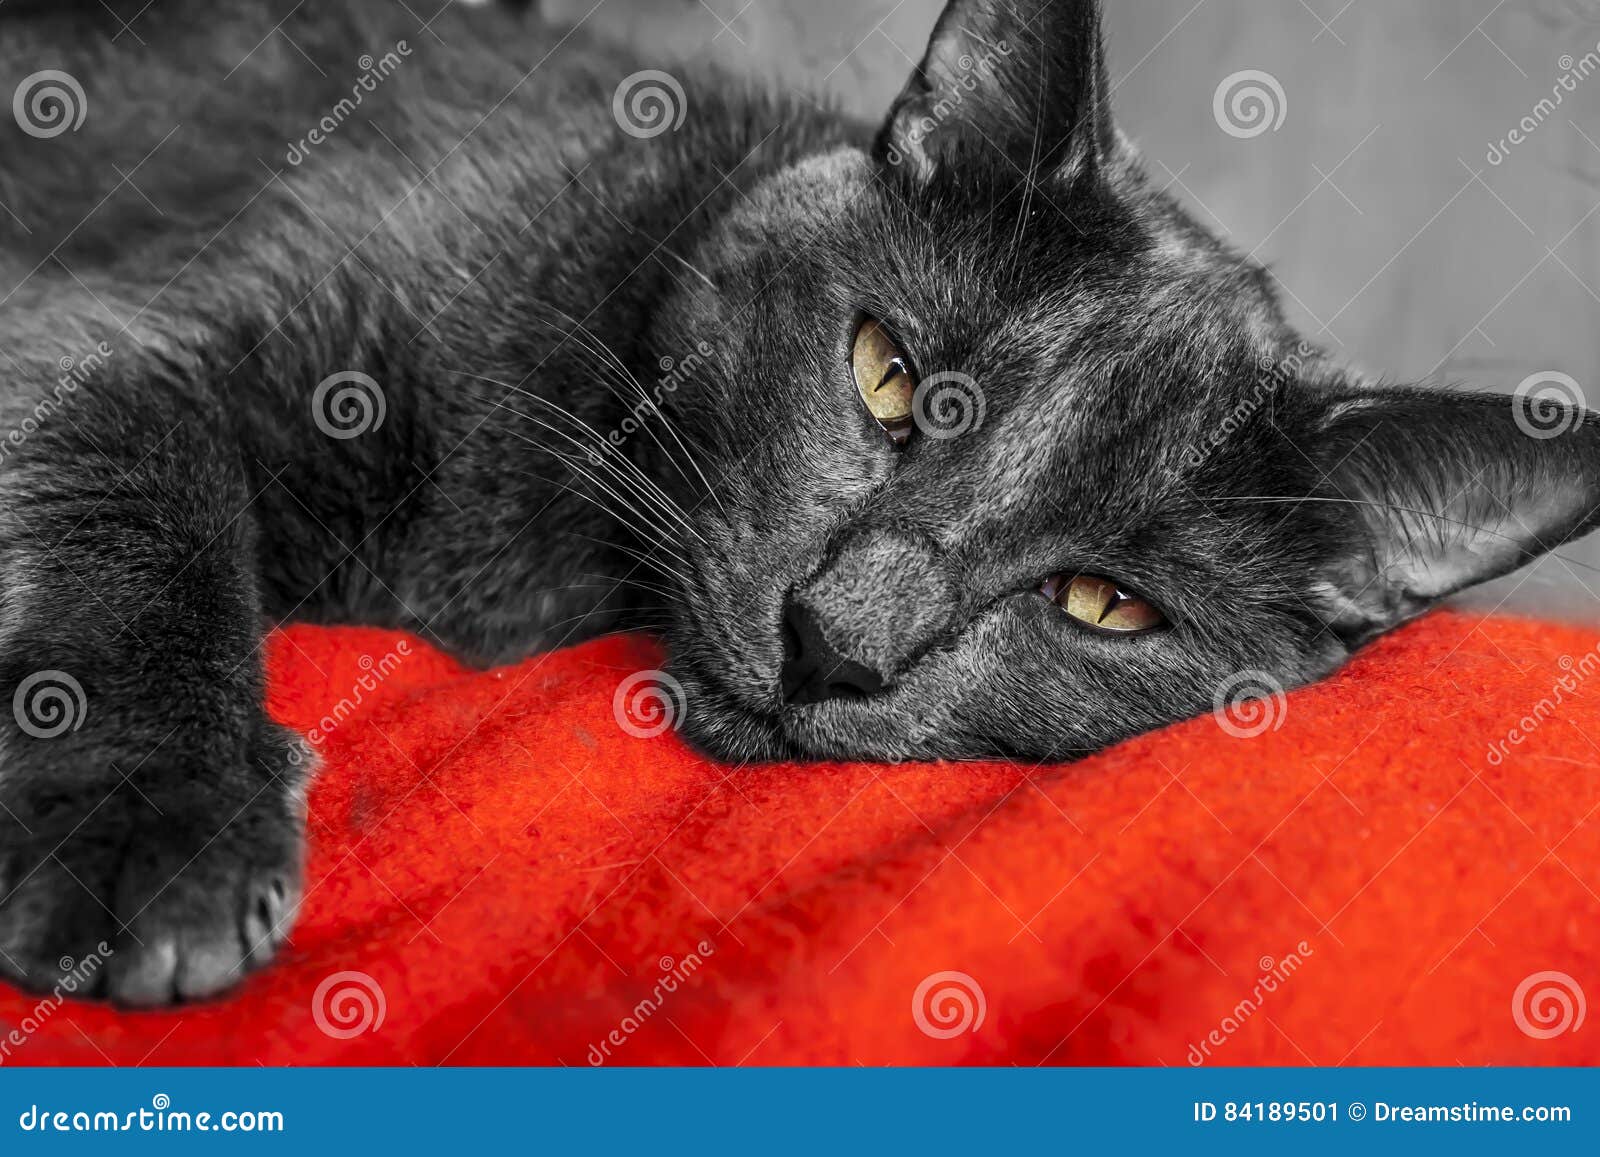 cat grey - gato gris